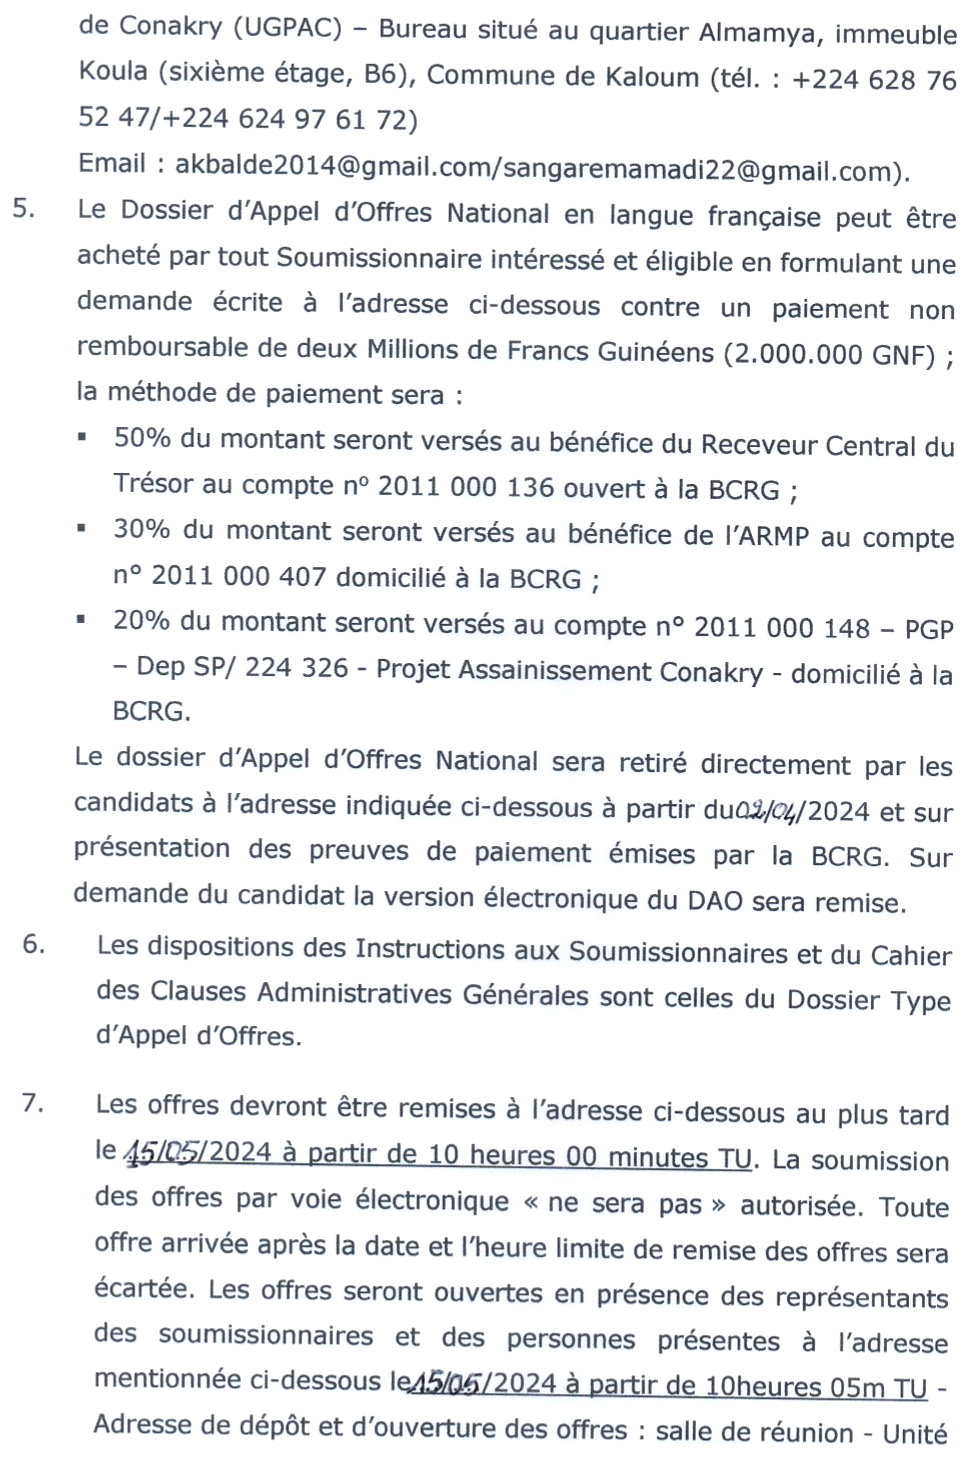 Maintenance Des Canaux De Drainage Dans Les Communes De Matoto et Ratoma | Page 3